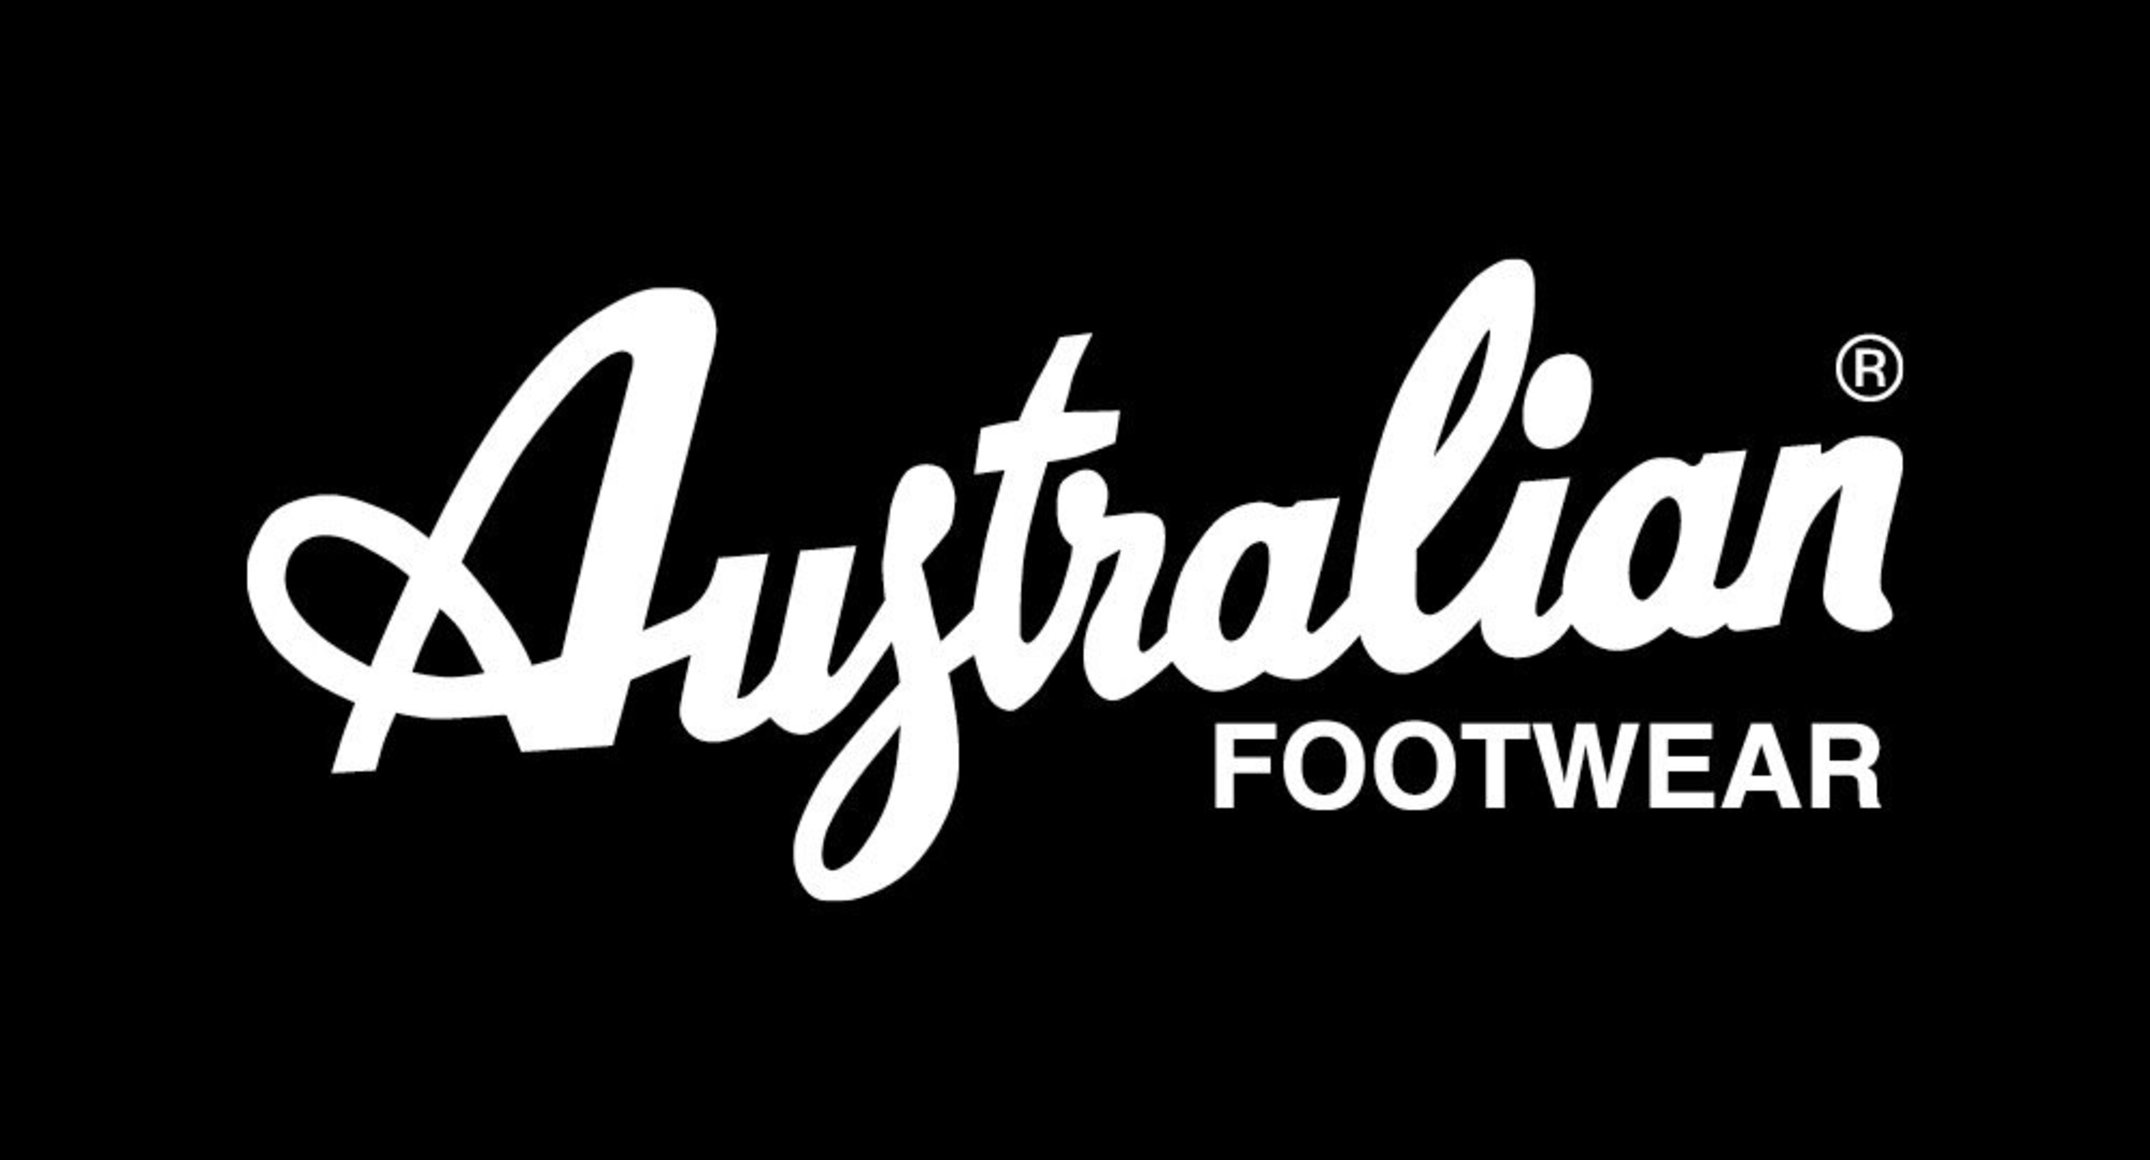 Australian Footwear